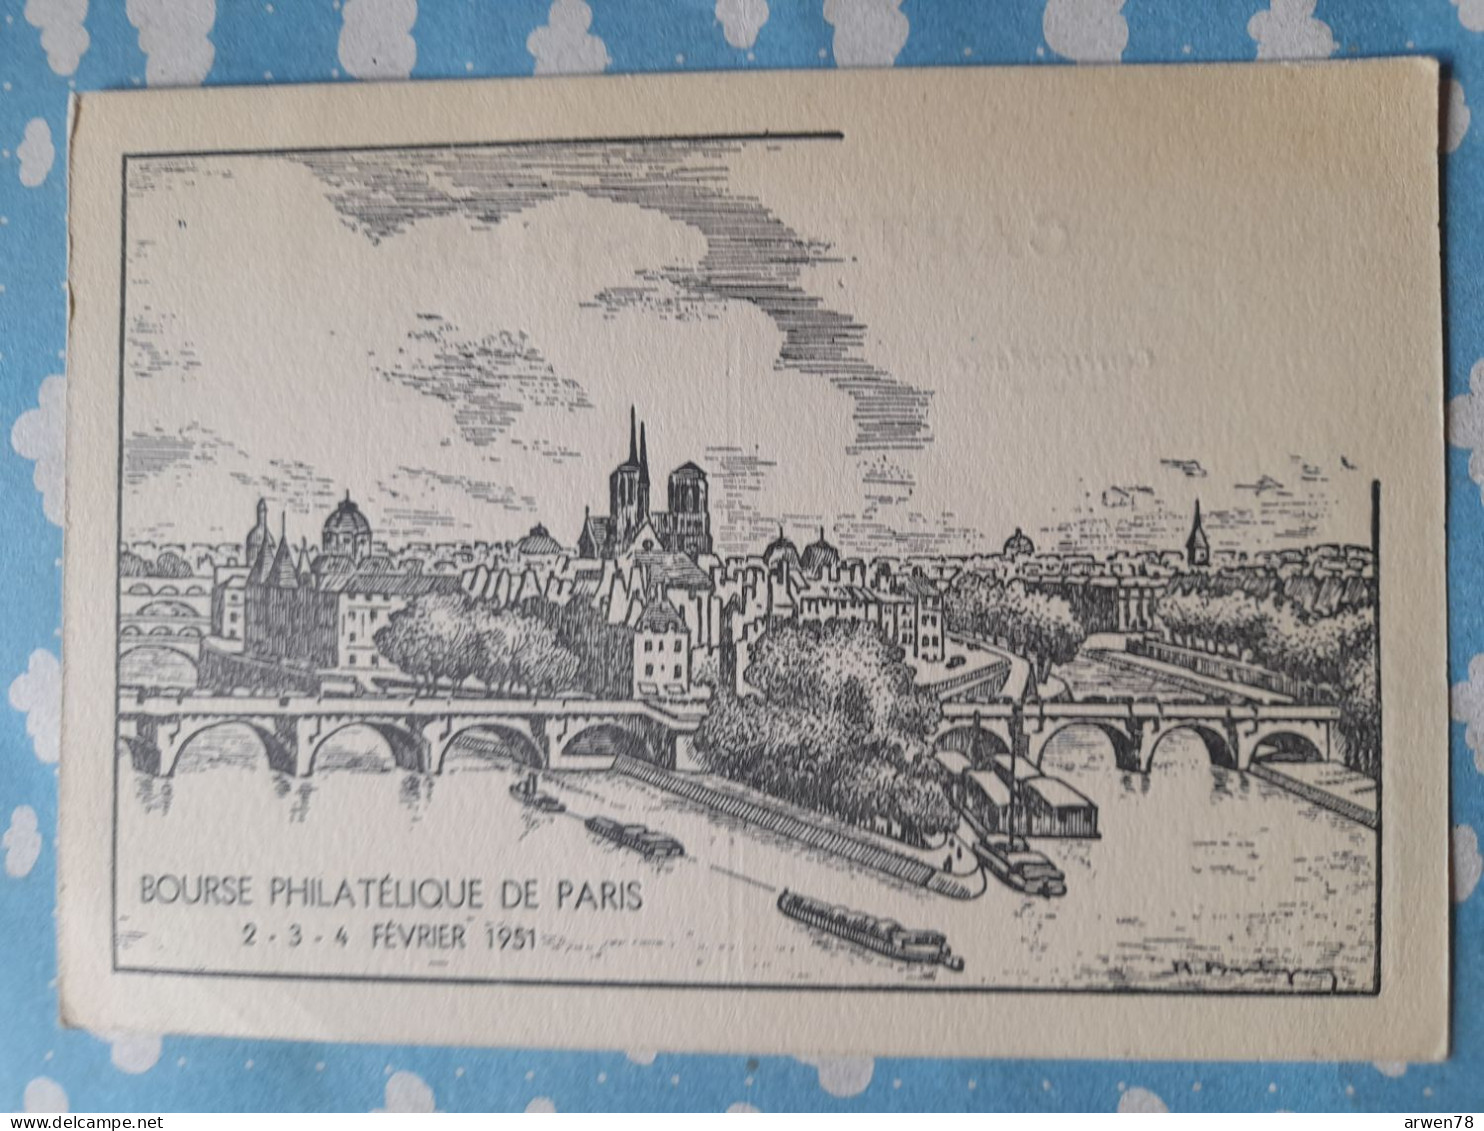 BOURSE PHILATELIQUE DE PARIS 2 . 3 . 4 FEVRIER 1951 - Poste & Facteurs